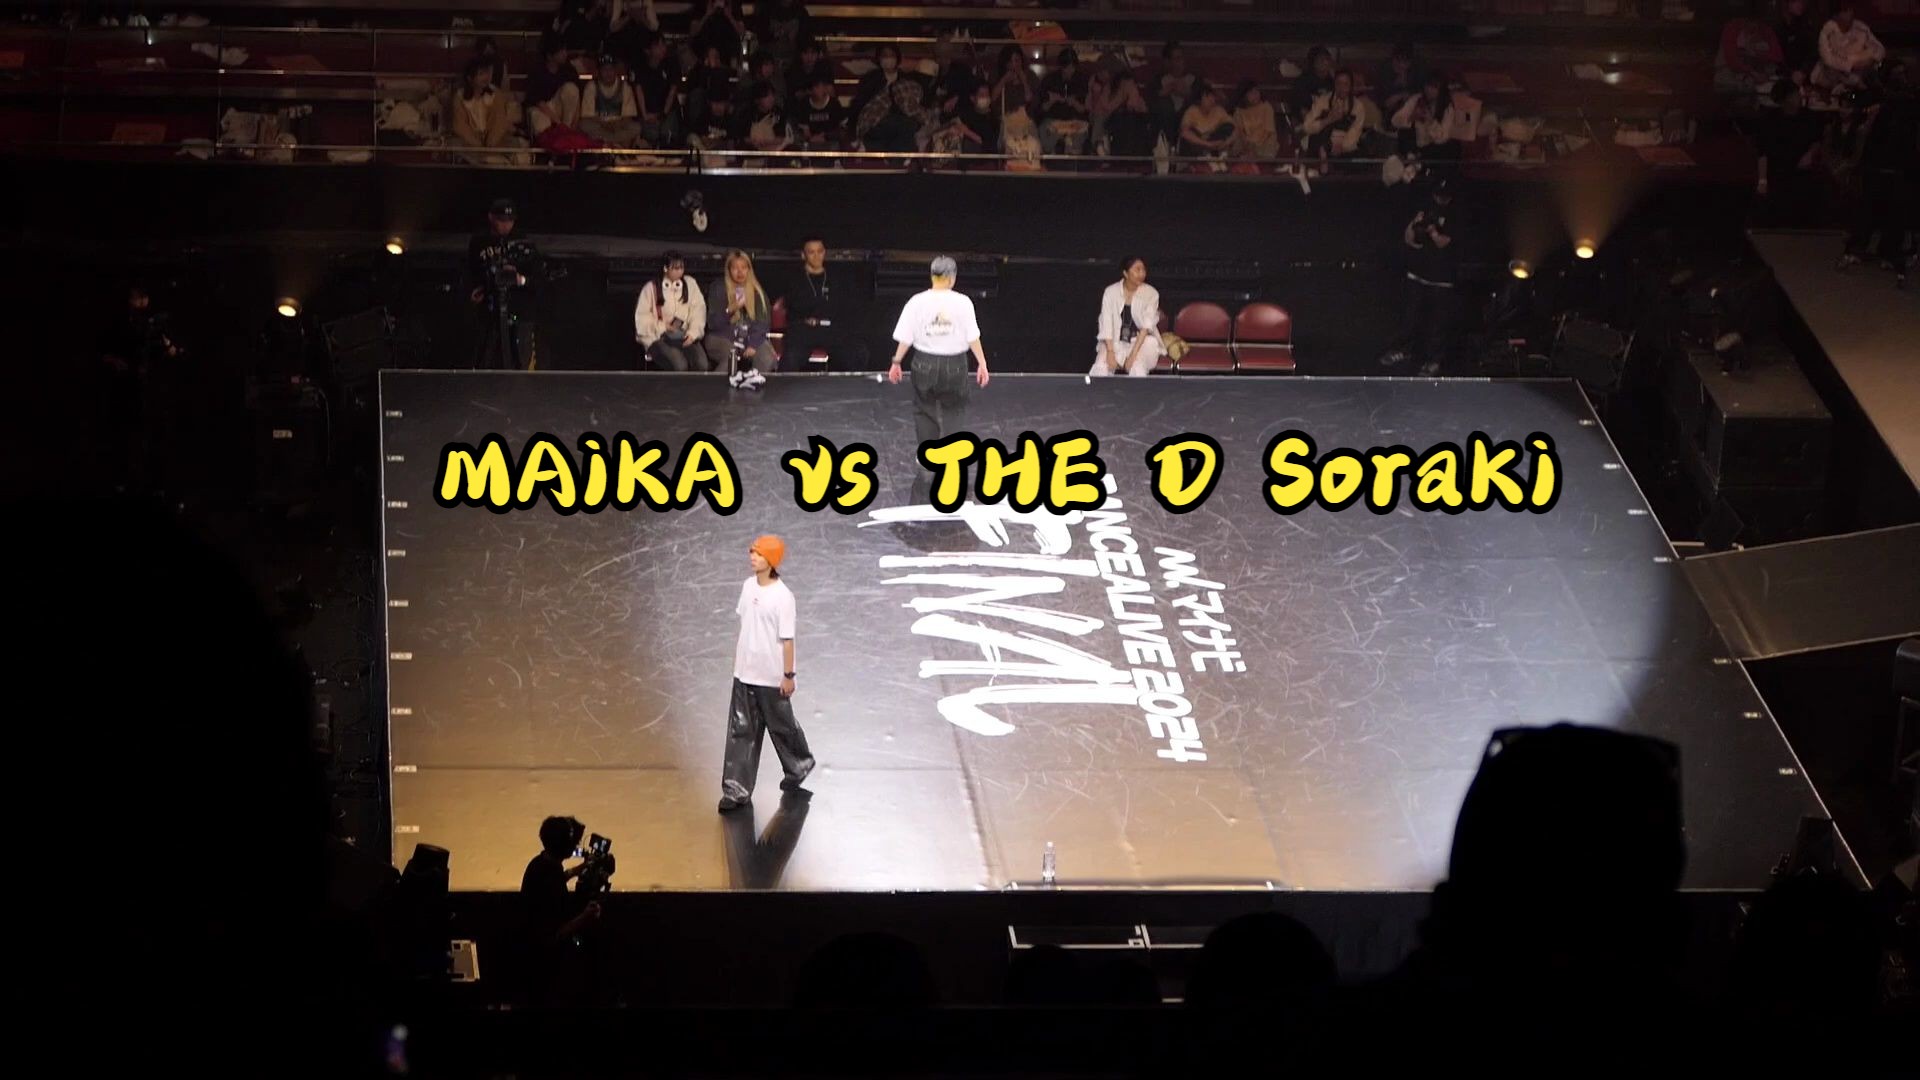 MAiKA vs THE D SoraKi